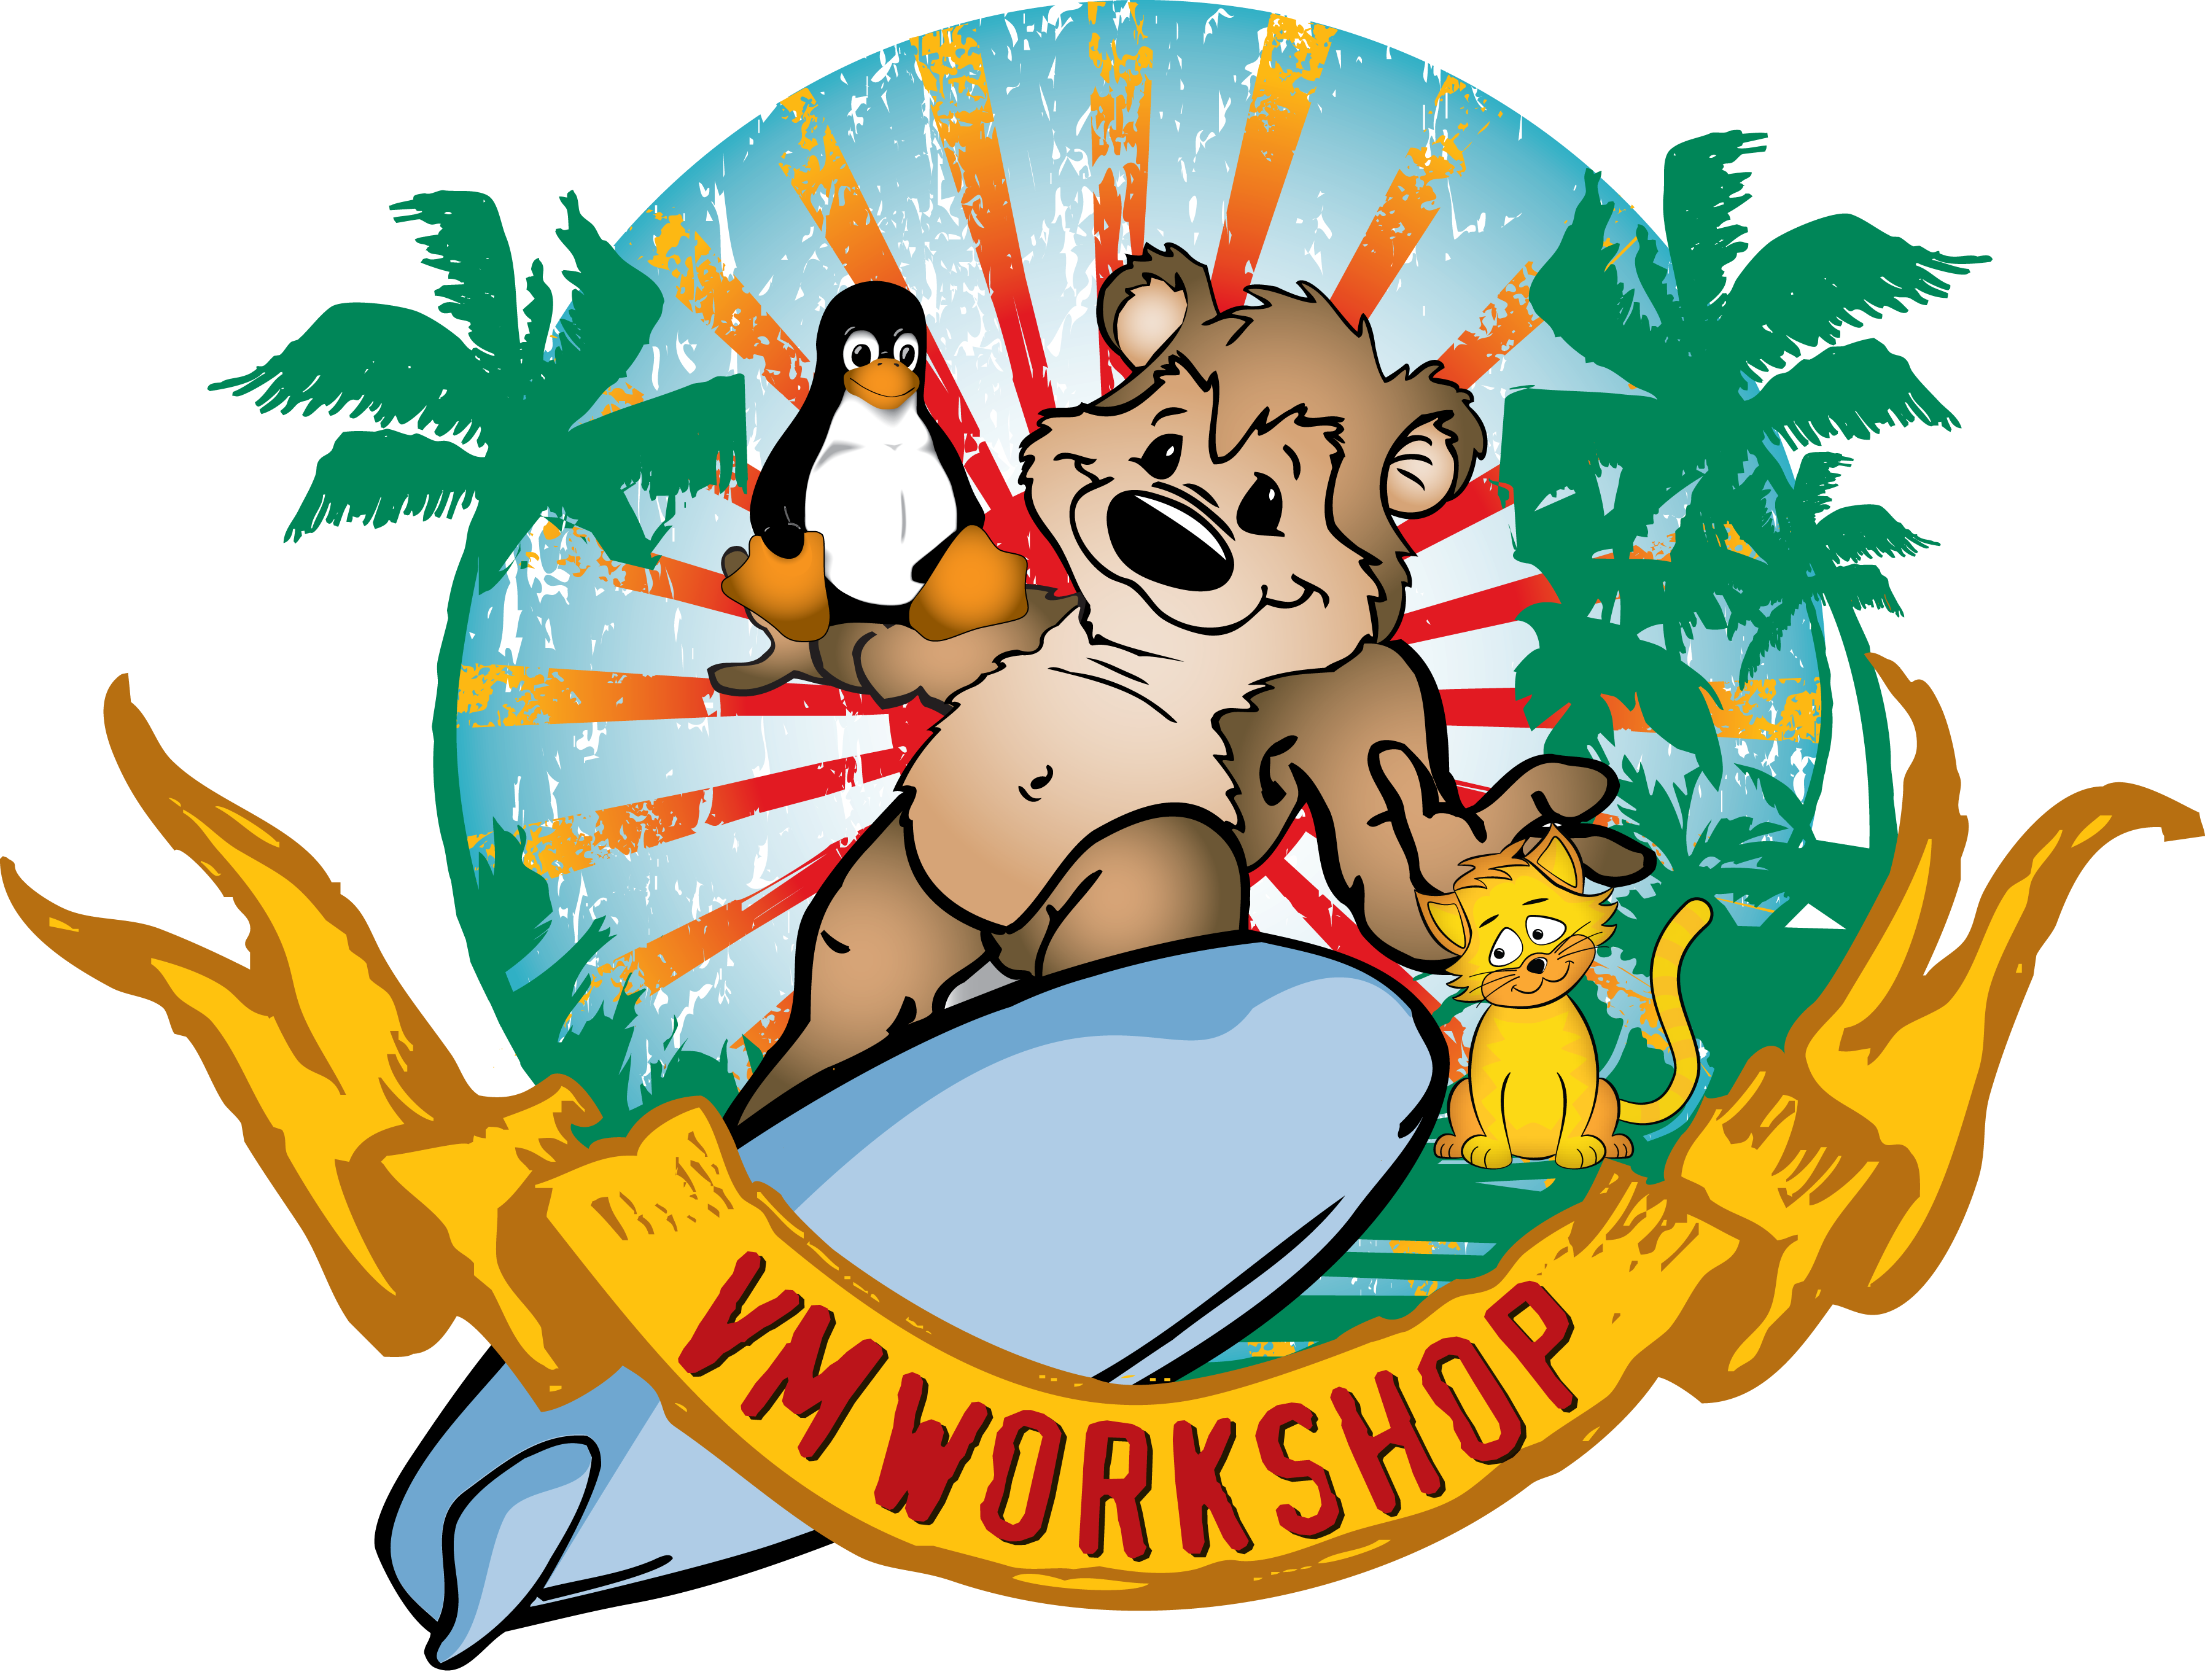 VM Workshop Logo